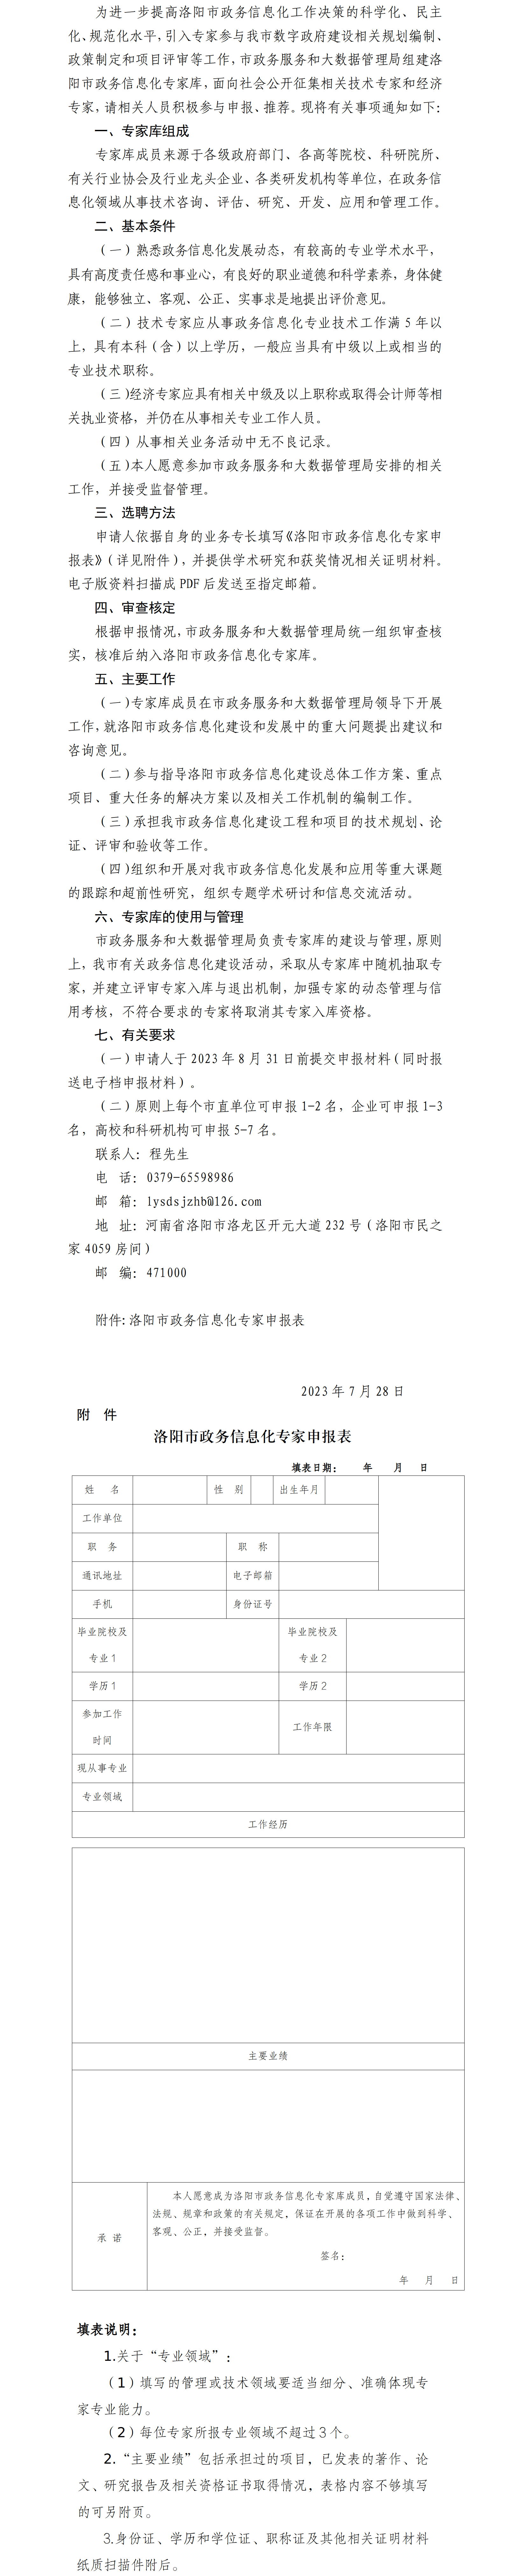 关于征集洛阳市政务信息化专家库成员的公告20230728.png